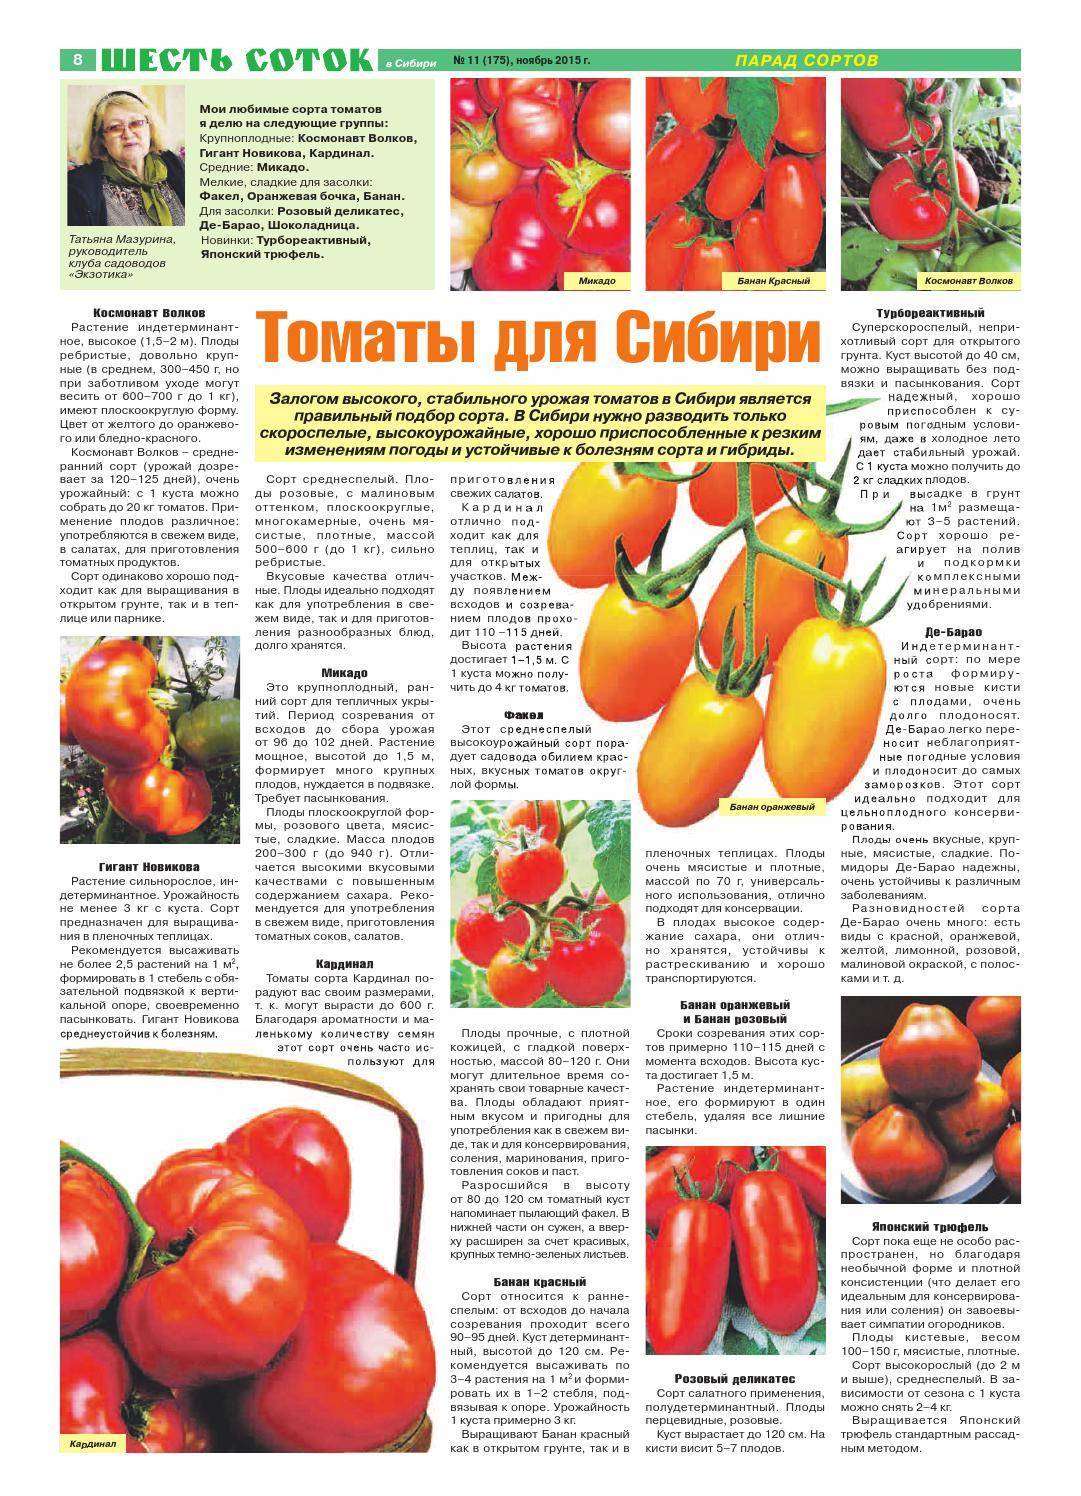 12 лучших сортов помидоров для засолки - рейтинг 2021